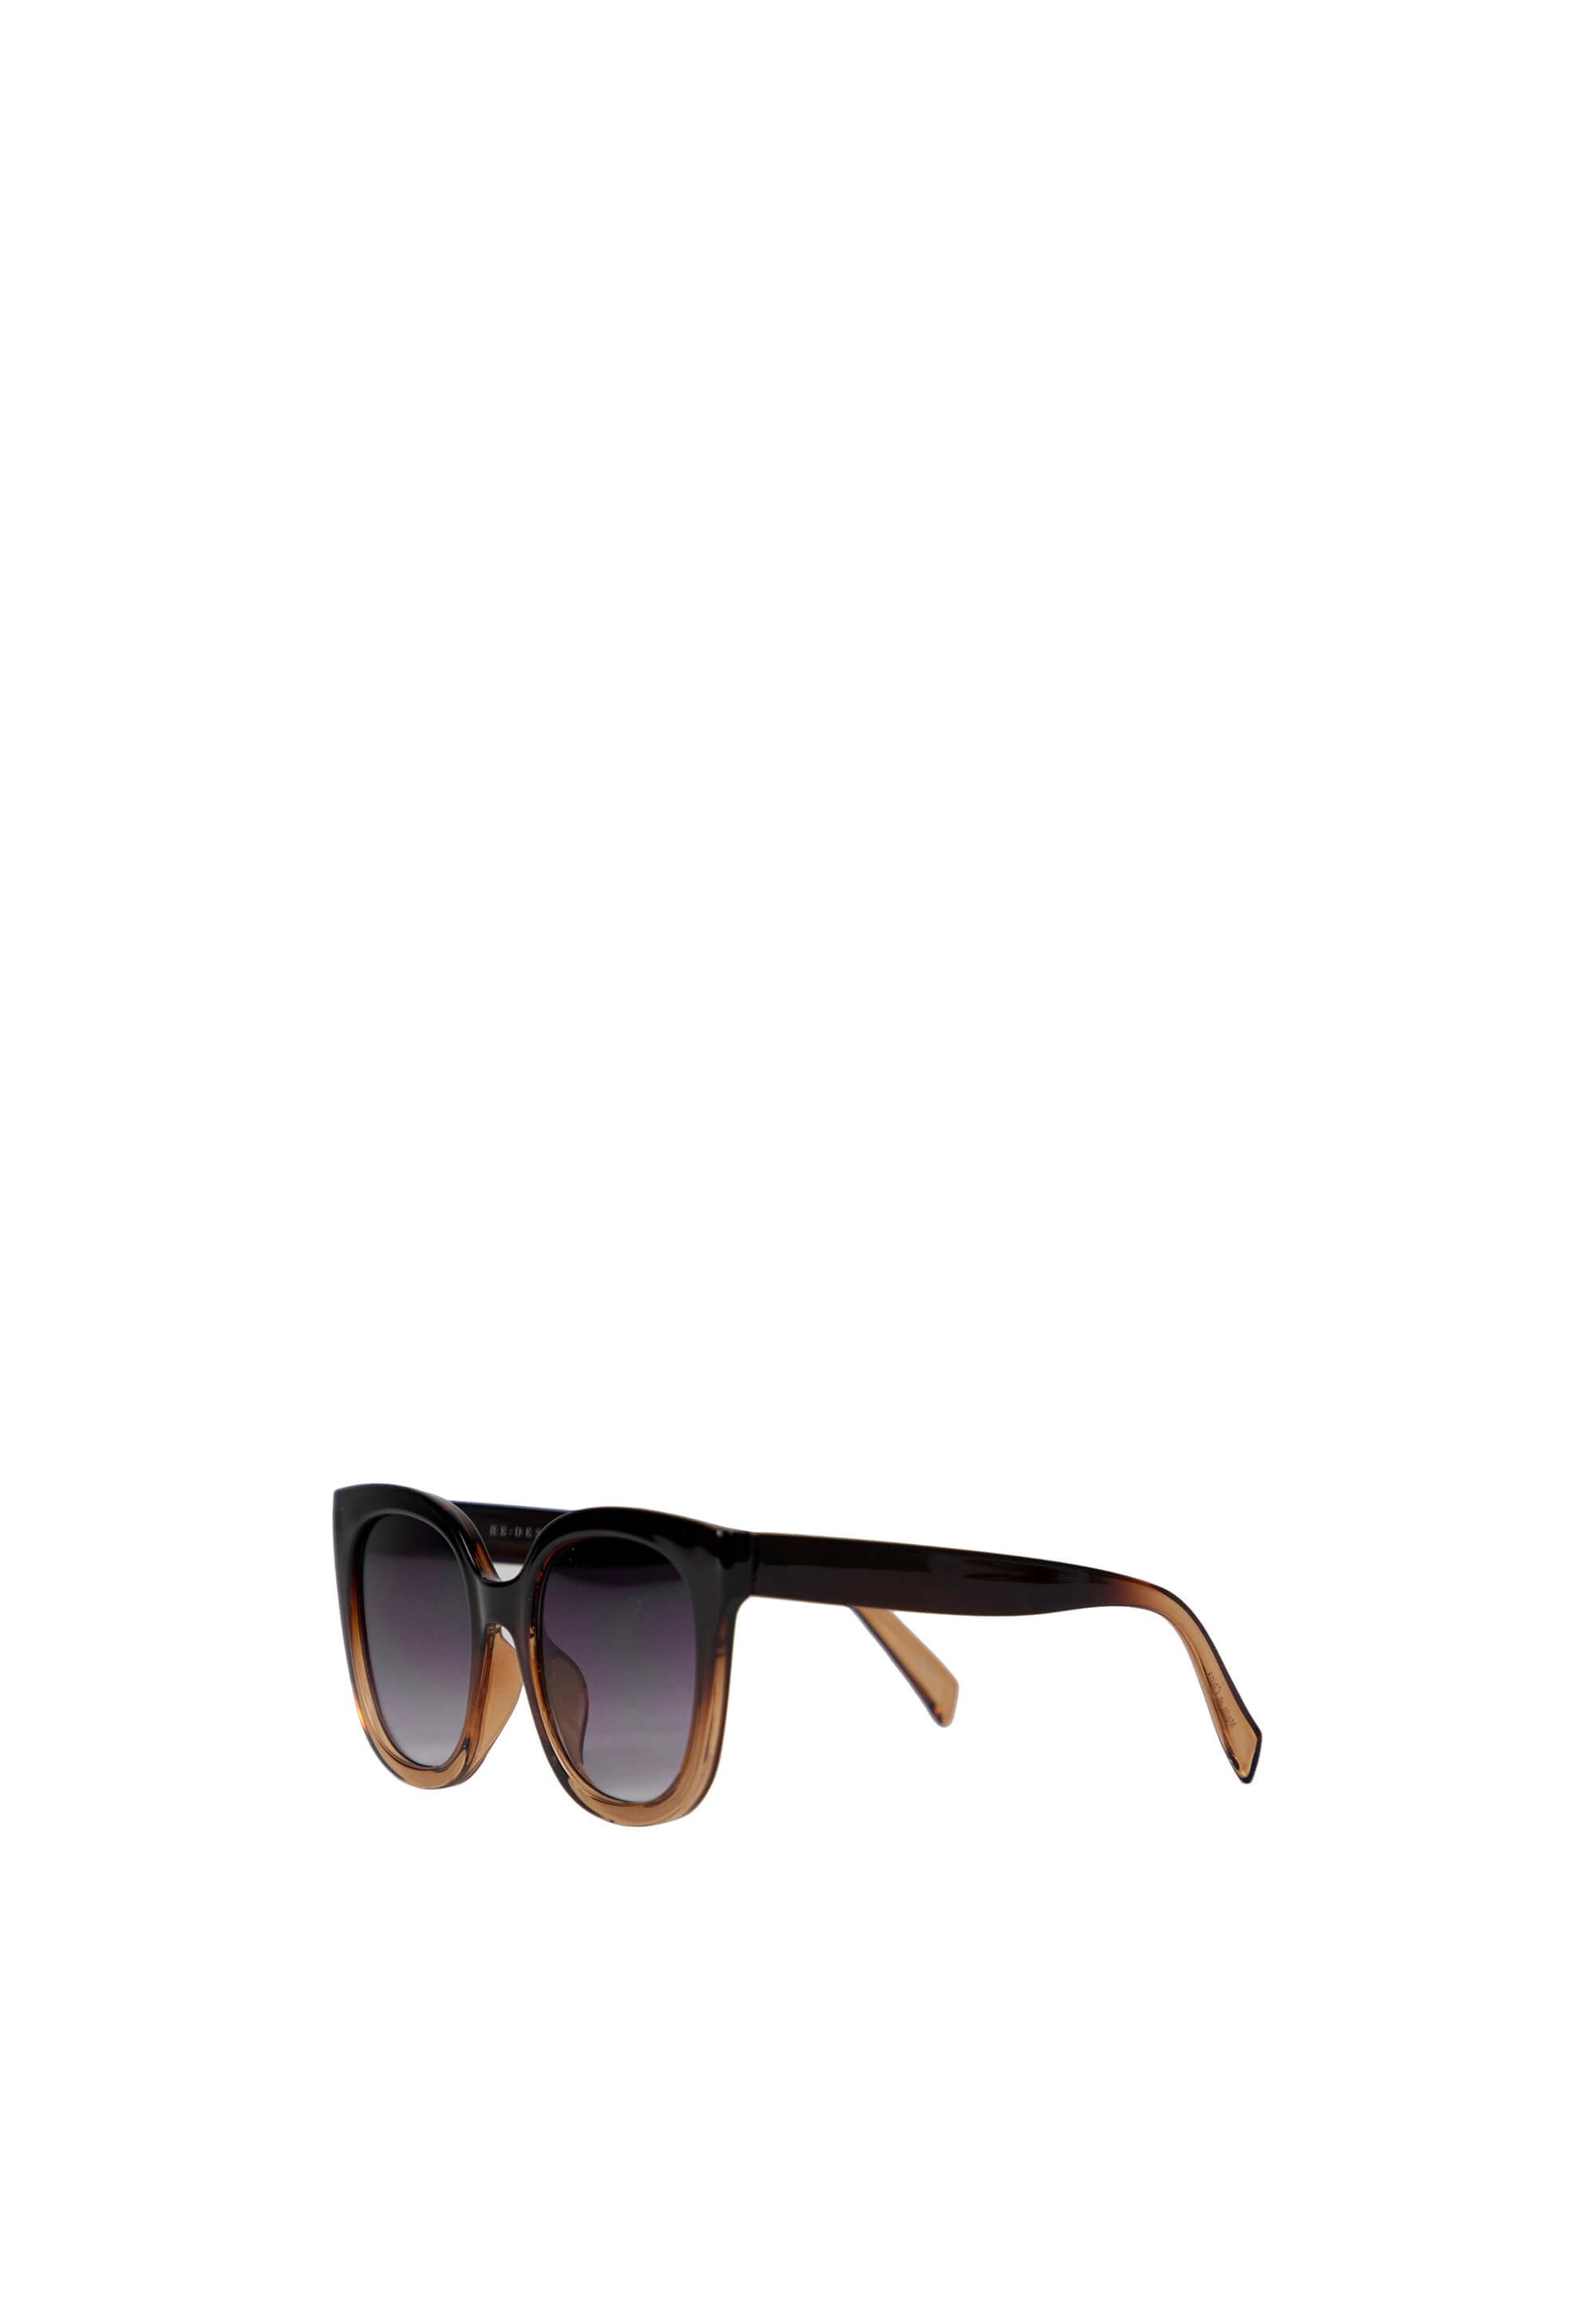 møl møl mangfoldighed Køb Re:Designed Sylvi Sunglasses, Brown - 5185 her.